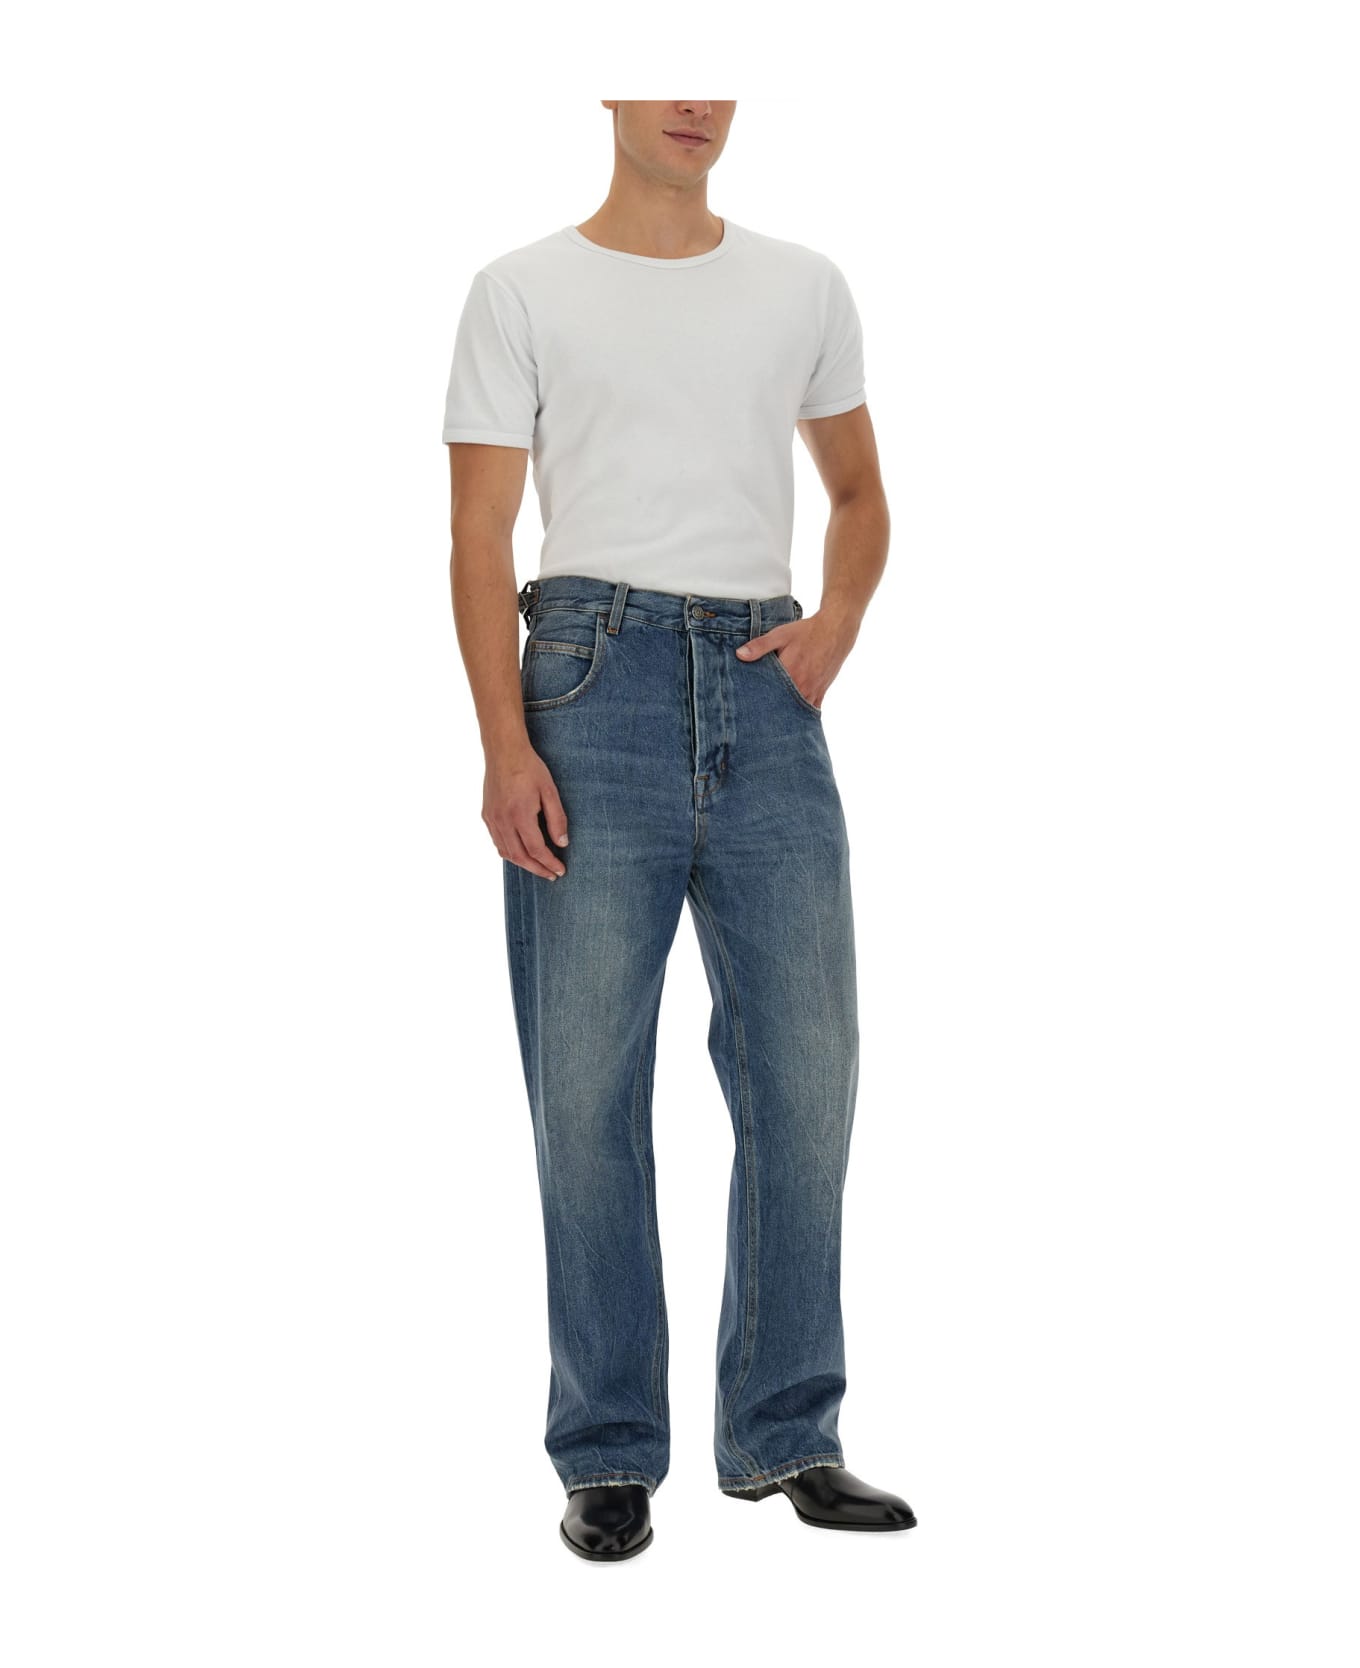 Haikure Jeans In Denim - BLU